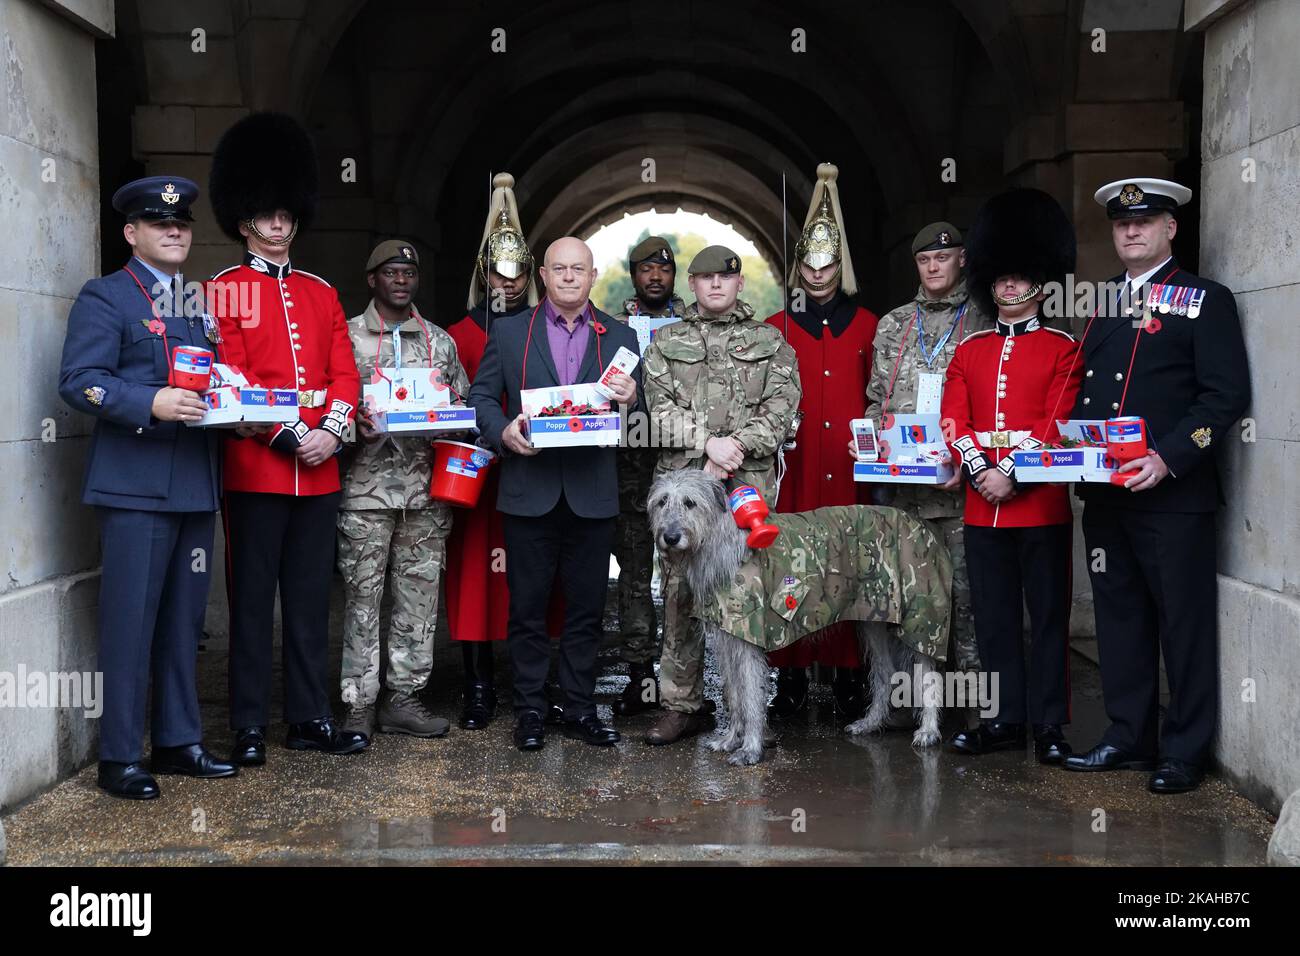 L'ambasciatore della Royal British Legion Ross Kemp (al centro a sinistra) lancia quest'anno il London Poppy Day, con la mascotte delle Guardie irlandesi Irish Wolfhound Seamus e i membri dei servizi armati della Horse Guards Parade, Londra. Data immagine: Giovedì 3 novembre 2022. Foto Stock